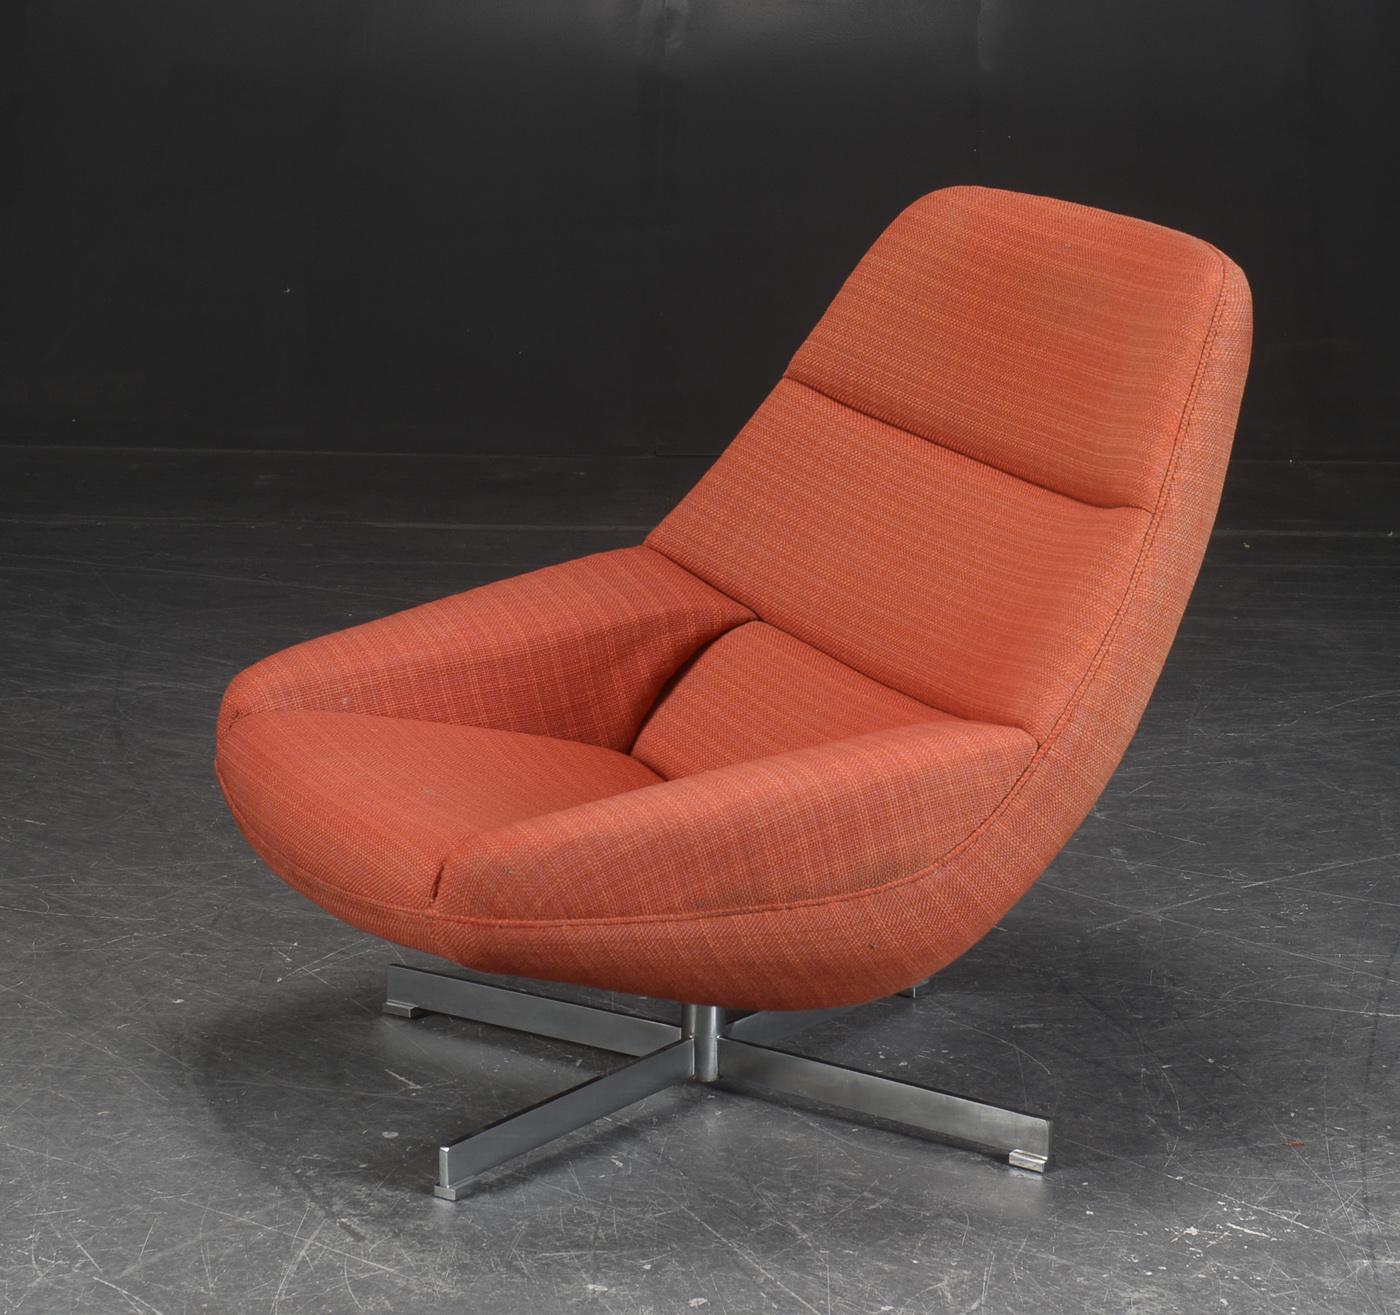 Rare fauteuil de salon pivotant ML91 conçu par Illum Wikkelso et produit par A. Mikael Laursen vers 1960 au Danemark. Il s'agit d'une variante rare du ML91 avec une base pivotante en aluminium alors que le modèle se trouve normalement avec une base